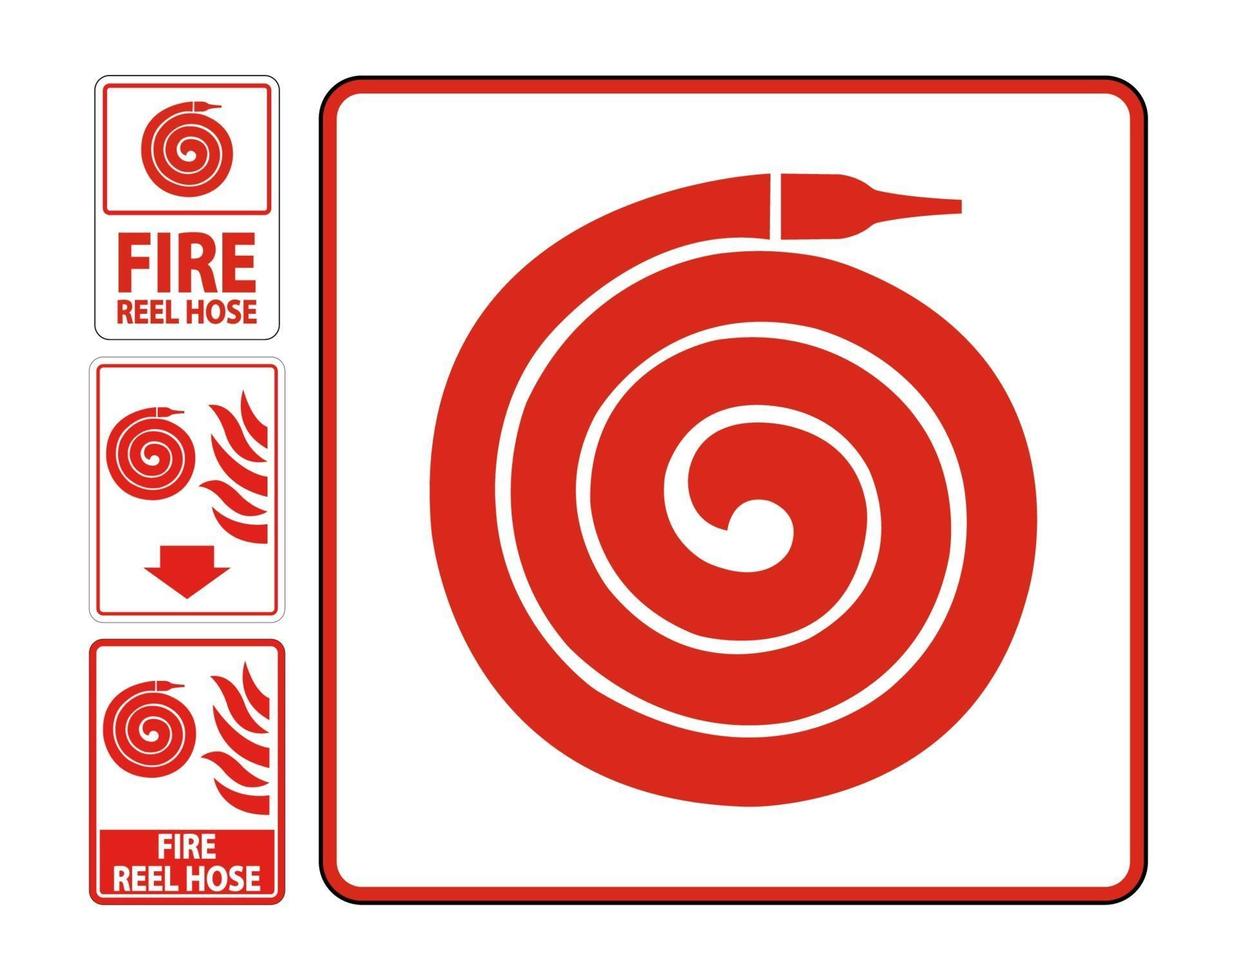 sinal de piso de mangueira de carretel de incêndio isolar em fundo branco, ilustração vetorial eps.10 vetor